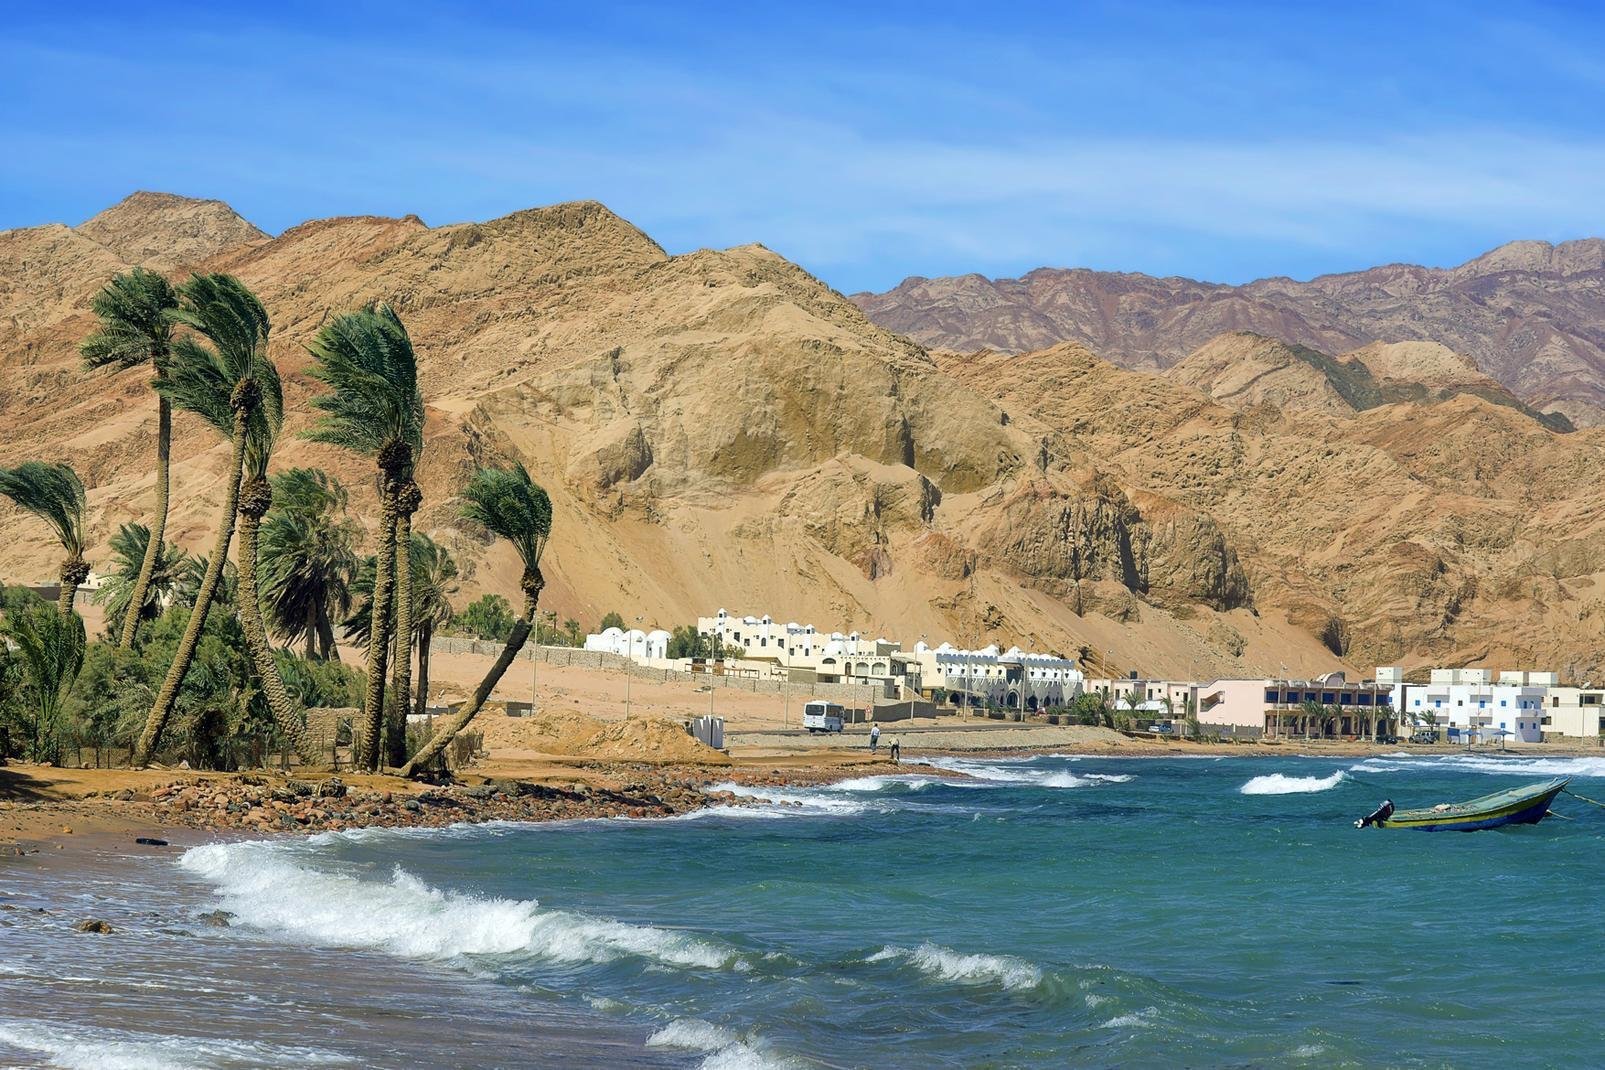 Située à une petite centaine de kilomètres au nord de Sharm el-Sheikh, sur la côte est du Sinaï, à deux heures de routes de Taba Heights, Dahab est une petite station balnéaire où le charme de l'Orient a laissé place à une ambiance « hippie » mêlée au chic balnéaire. Une eau turquoise à en perdre la tête, des plages dorées face aux montagnes du désert, Dahab est une ville authentique où l'on aime se ...